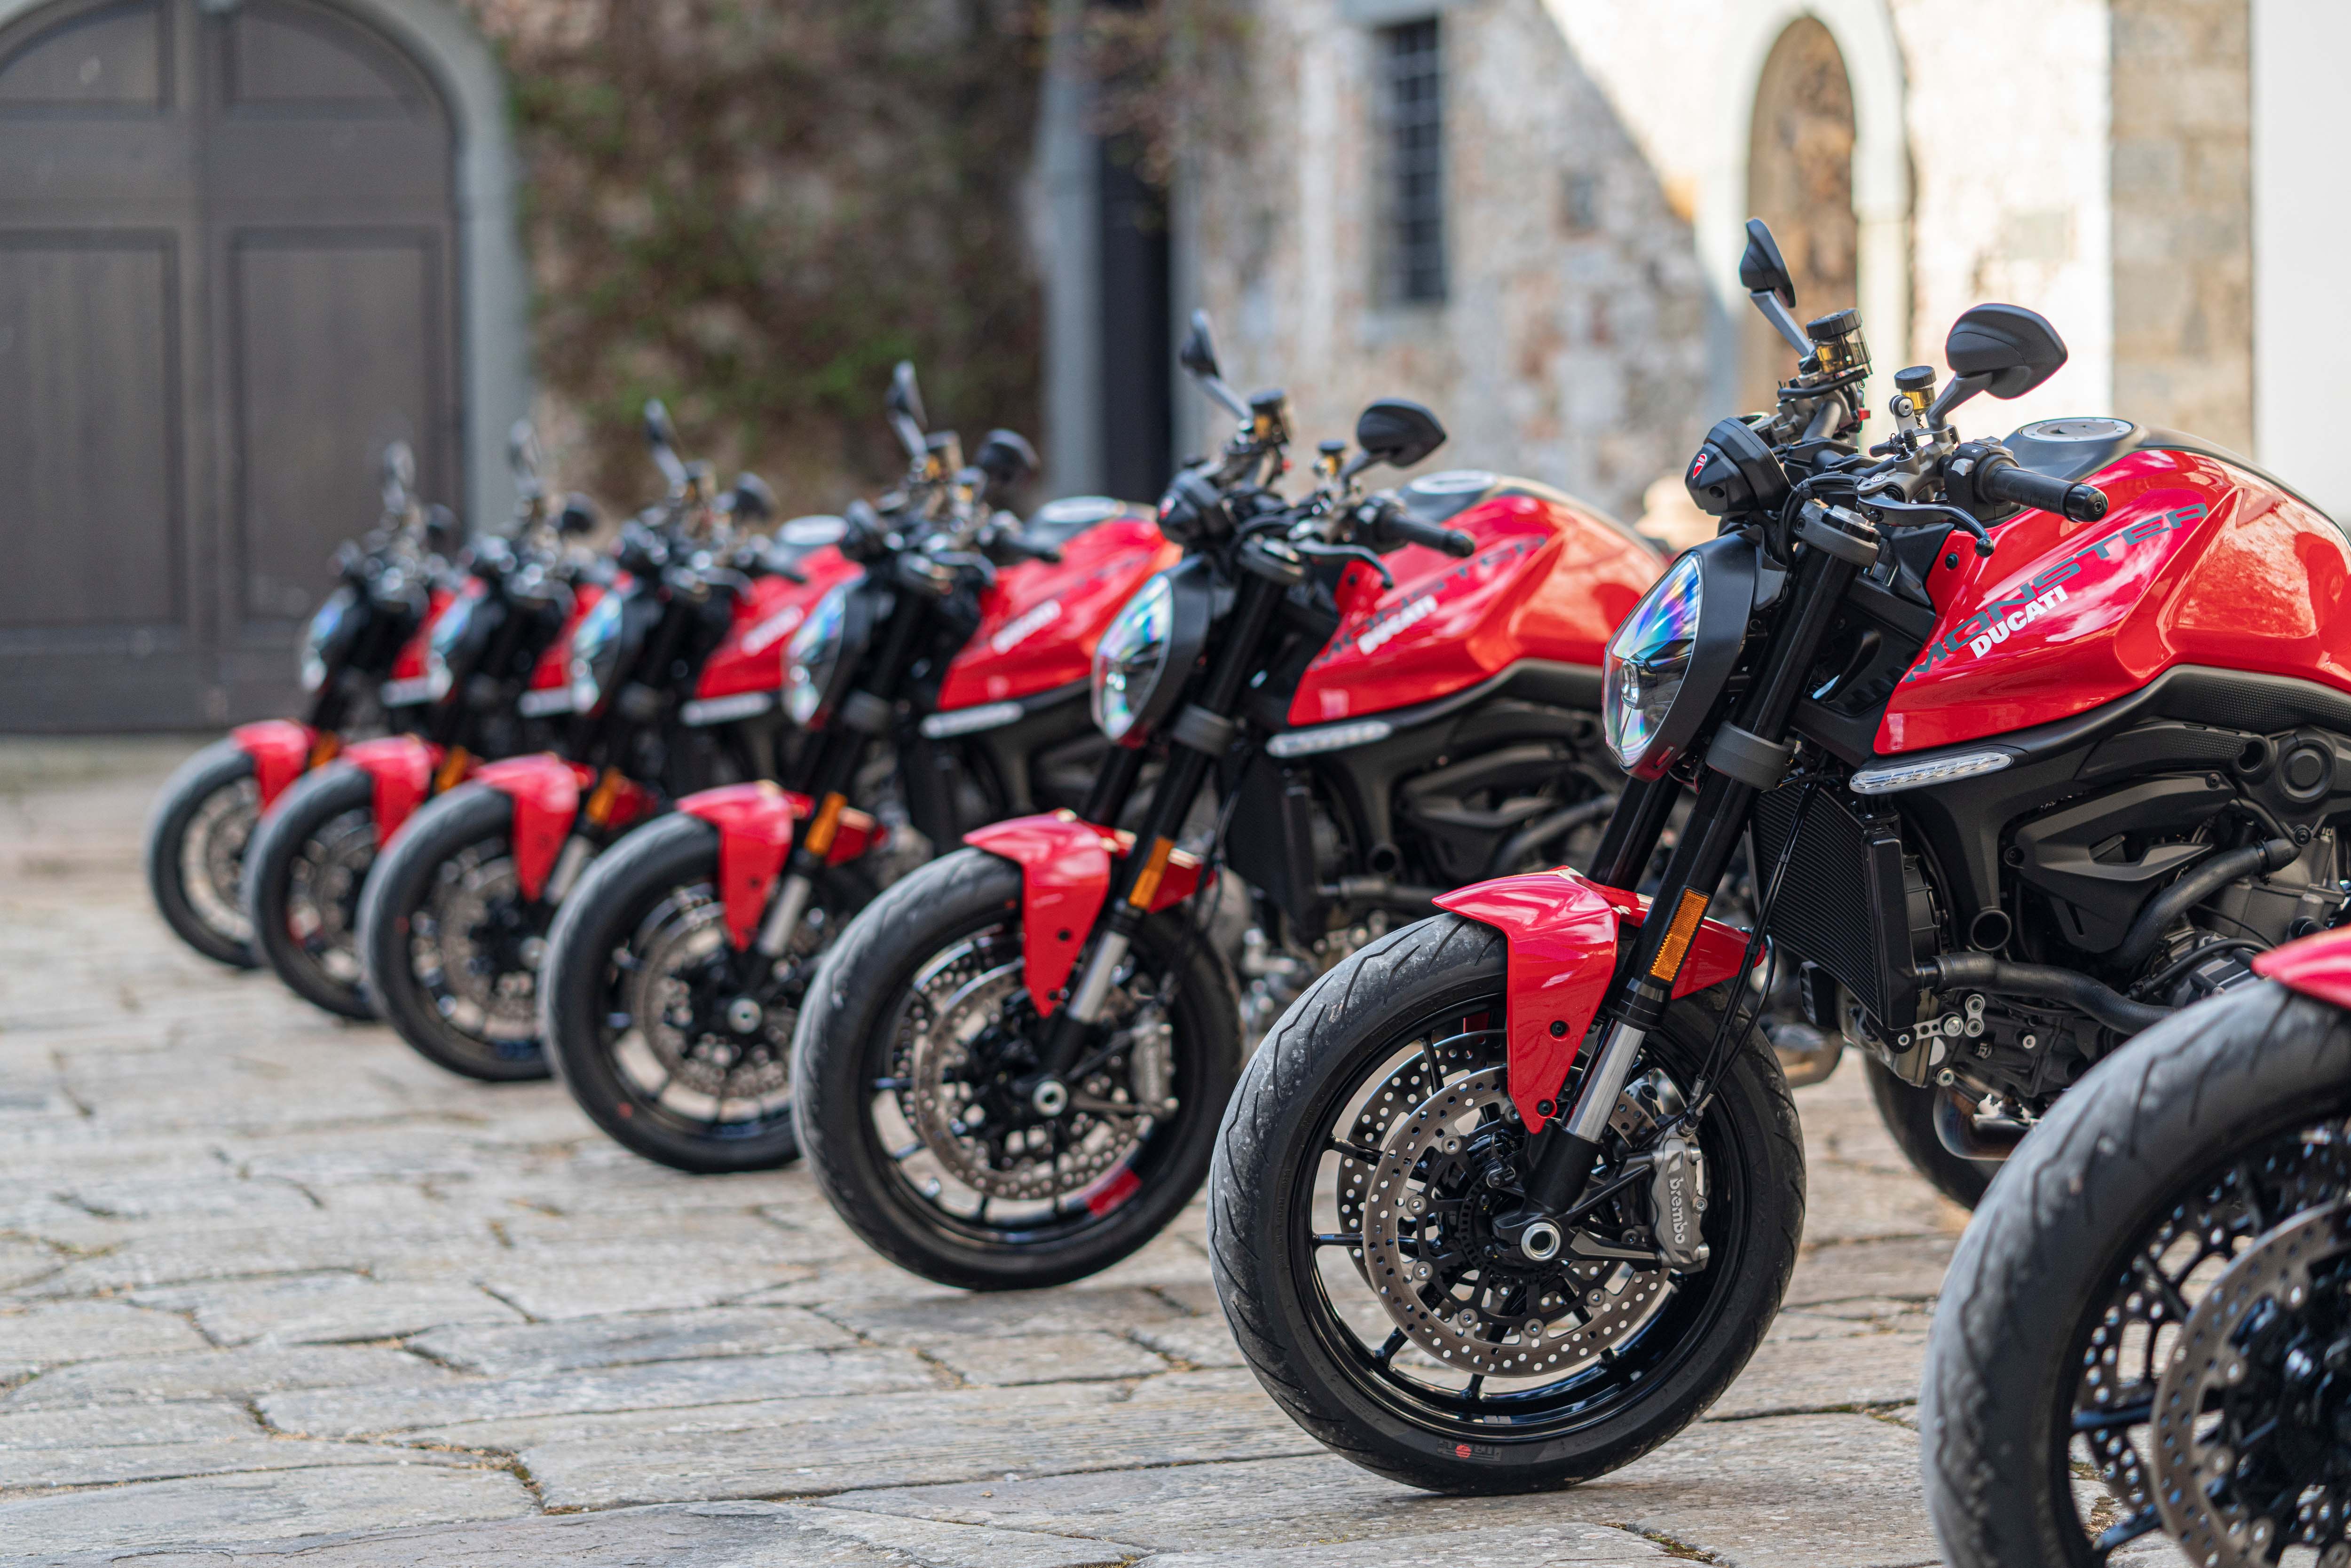 Đây là chiếc mô tô bán chạy nhất của Ducati mà anh em biker nào cũng muốn Ducati Monster.jpg